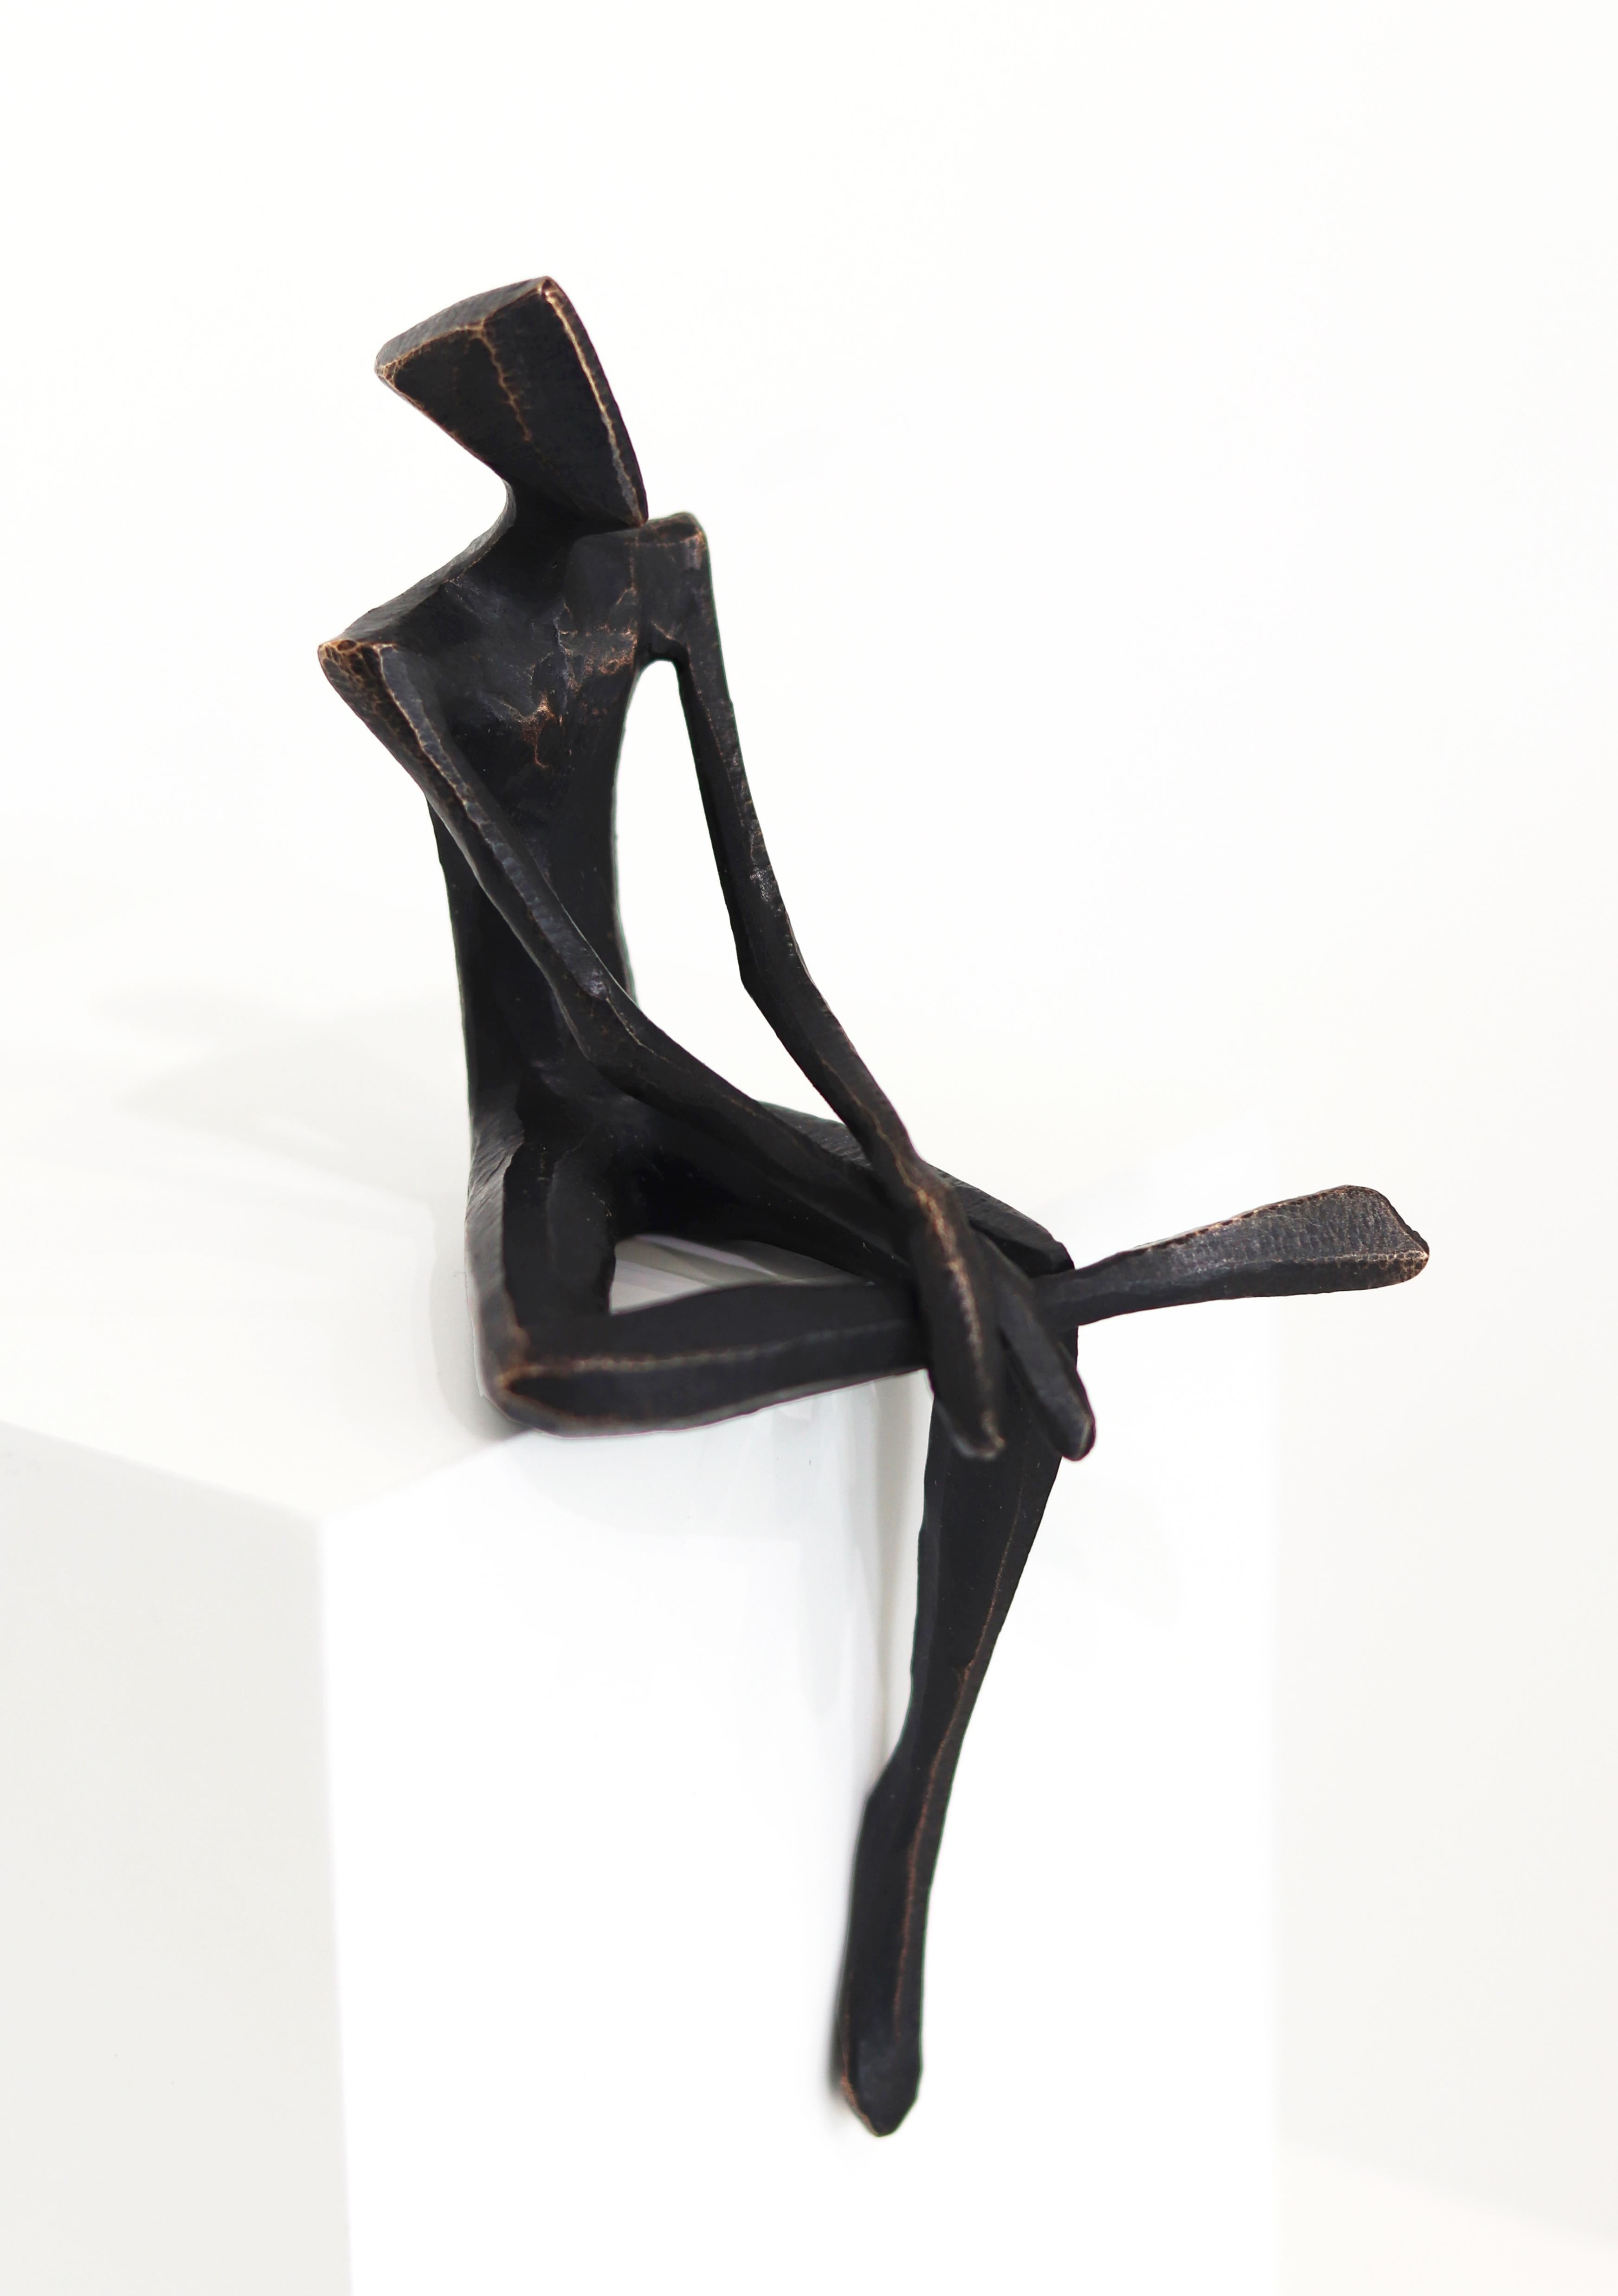 José  - One-of-a-kind Male Cubist Sitting Figure Original Bronze Sculpture For Sale 5